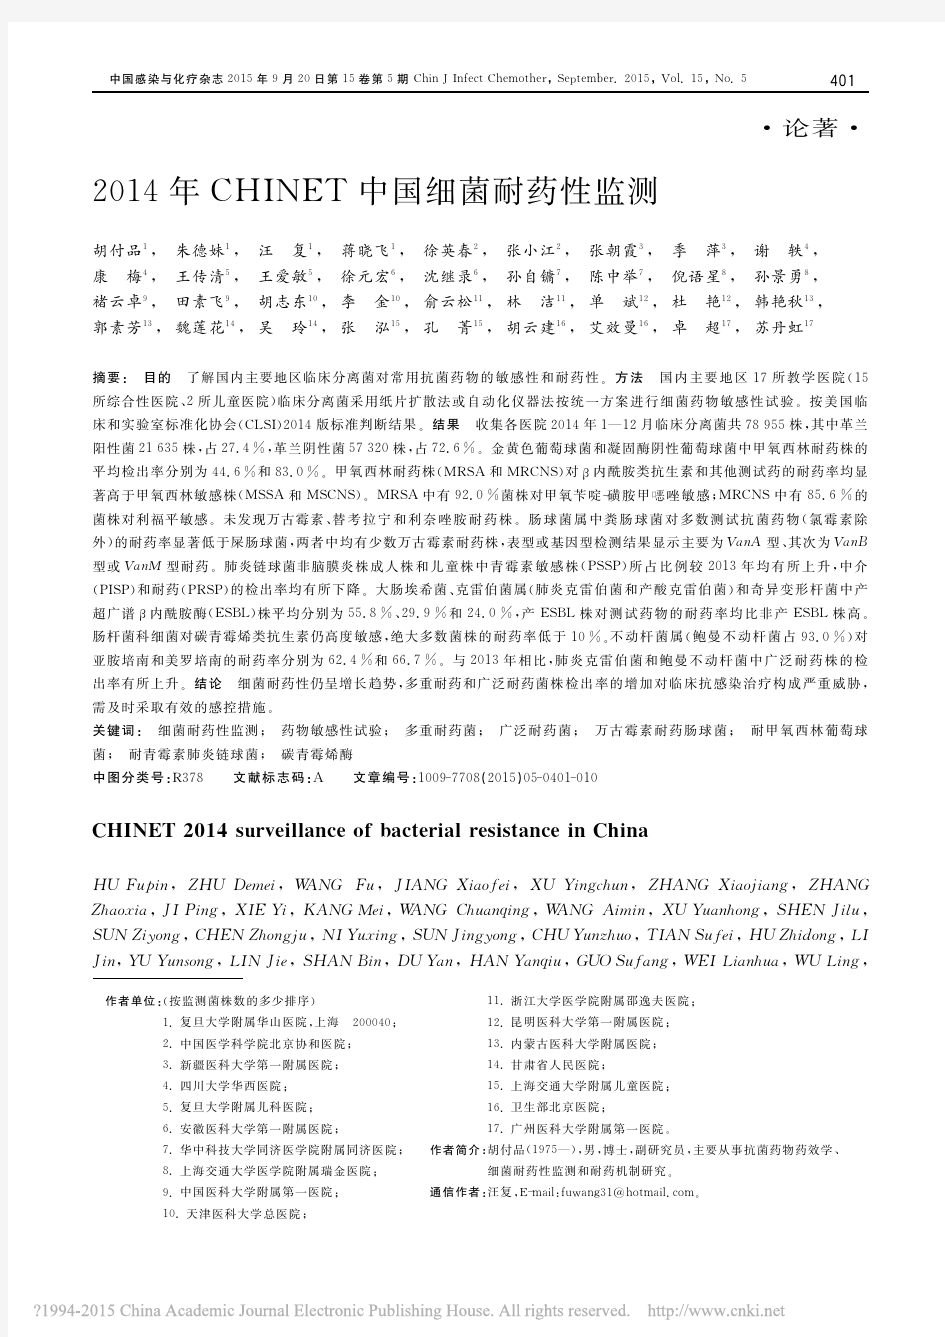 2014年CHINET中国细菌耐药性监测